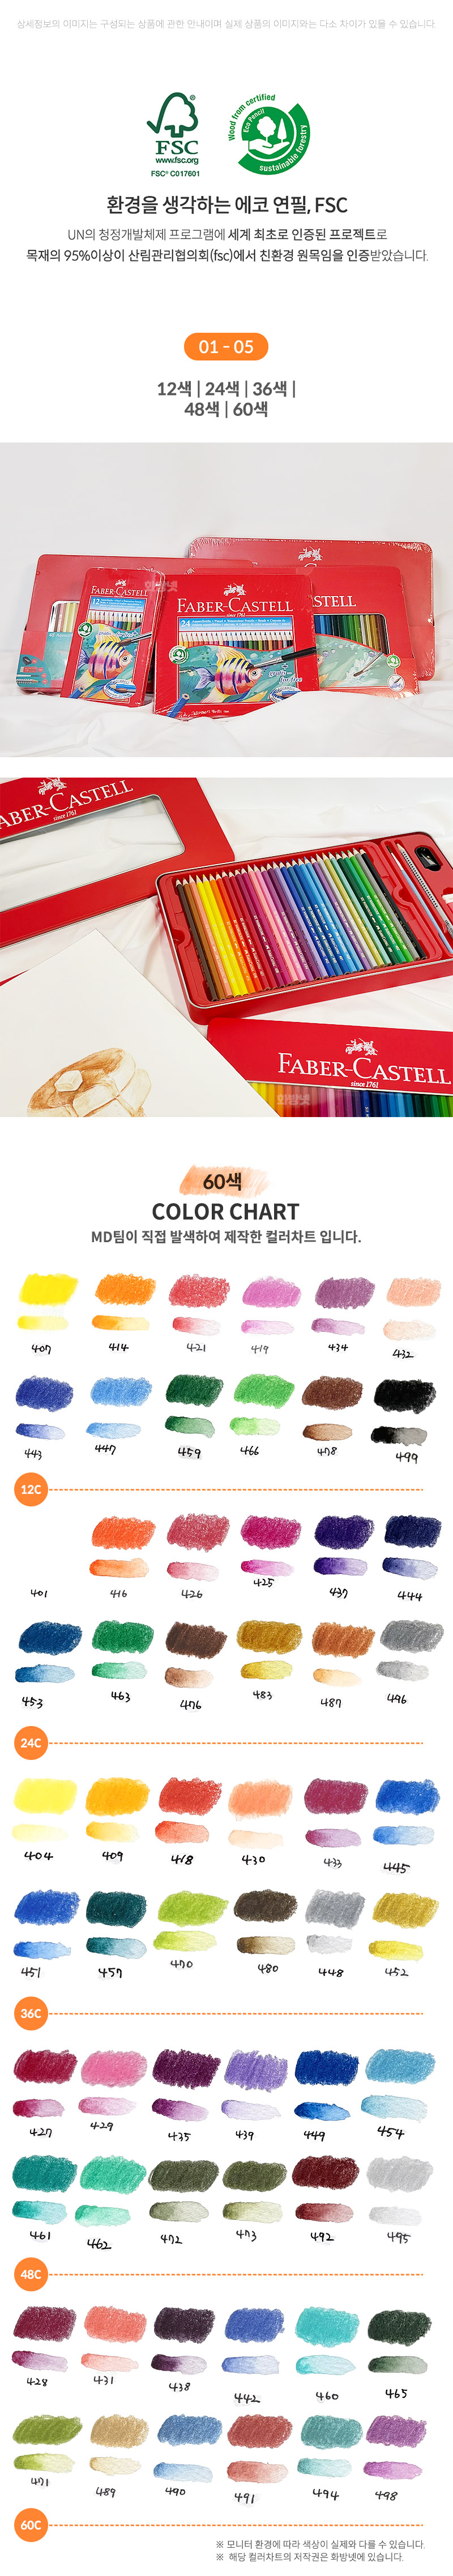 파버카스텔 수채색연필 색상표